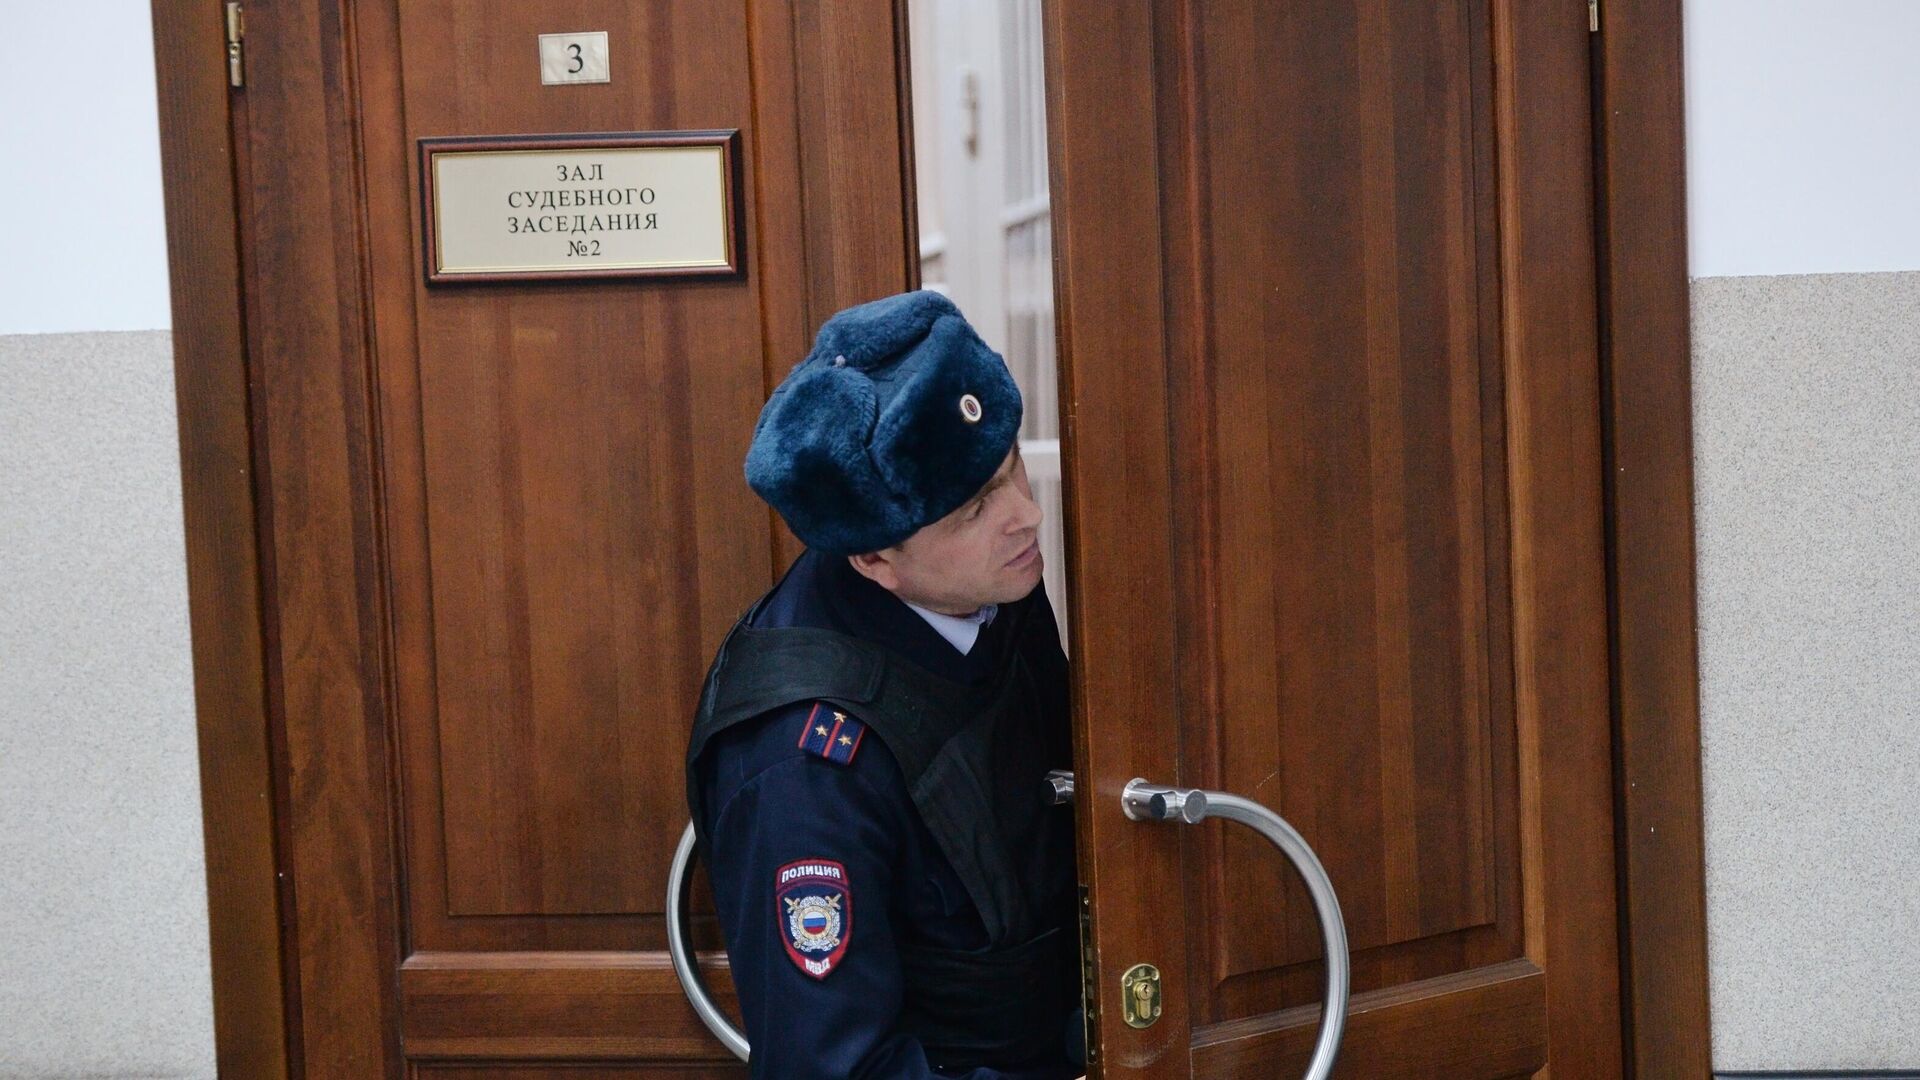 Сотрудник полиции выходит из зала судебных заеданий - РИА Новости, 1920, 05.03.2020